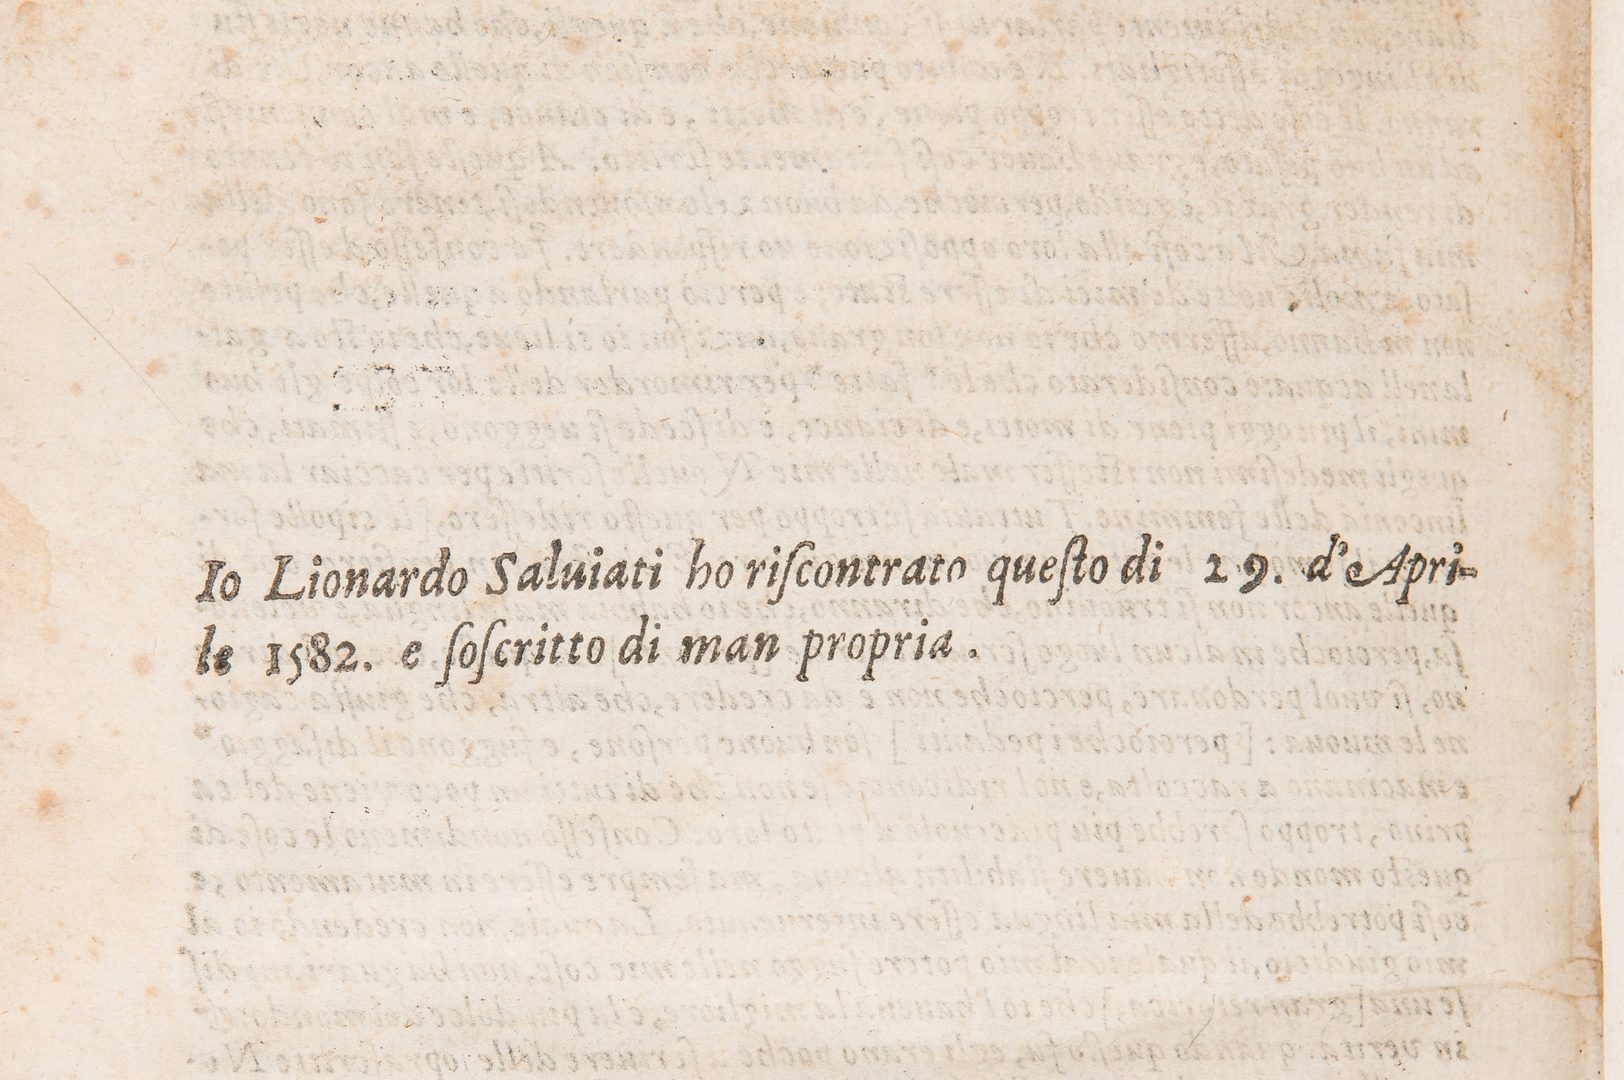 Lot 252: The Decameron, Giovanni Boccaccio, 1597